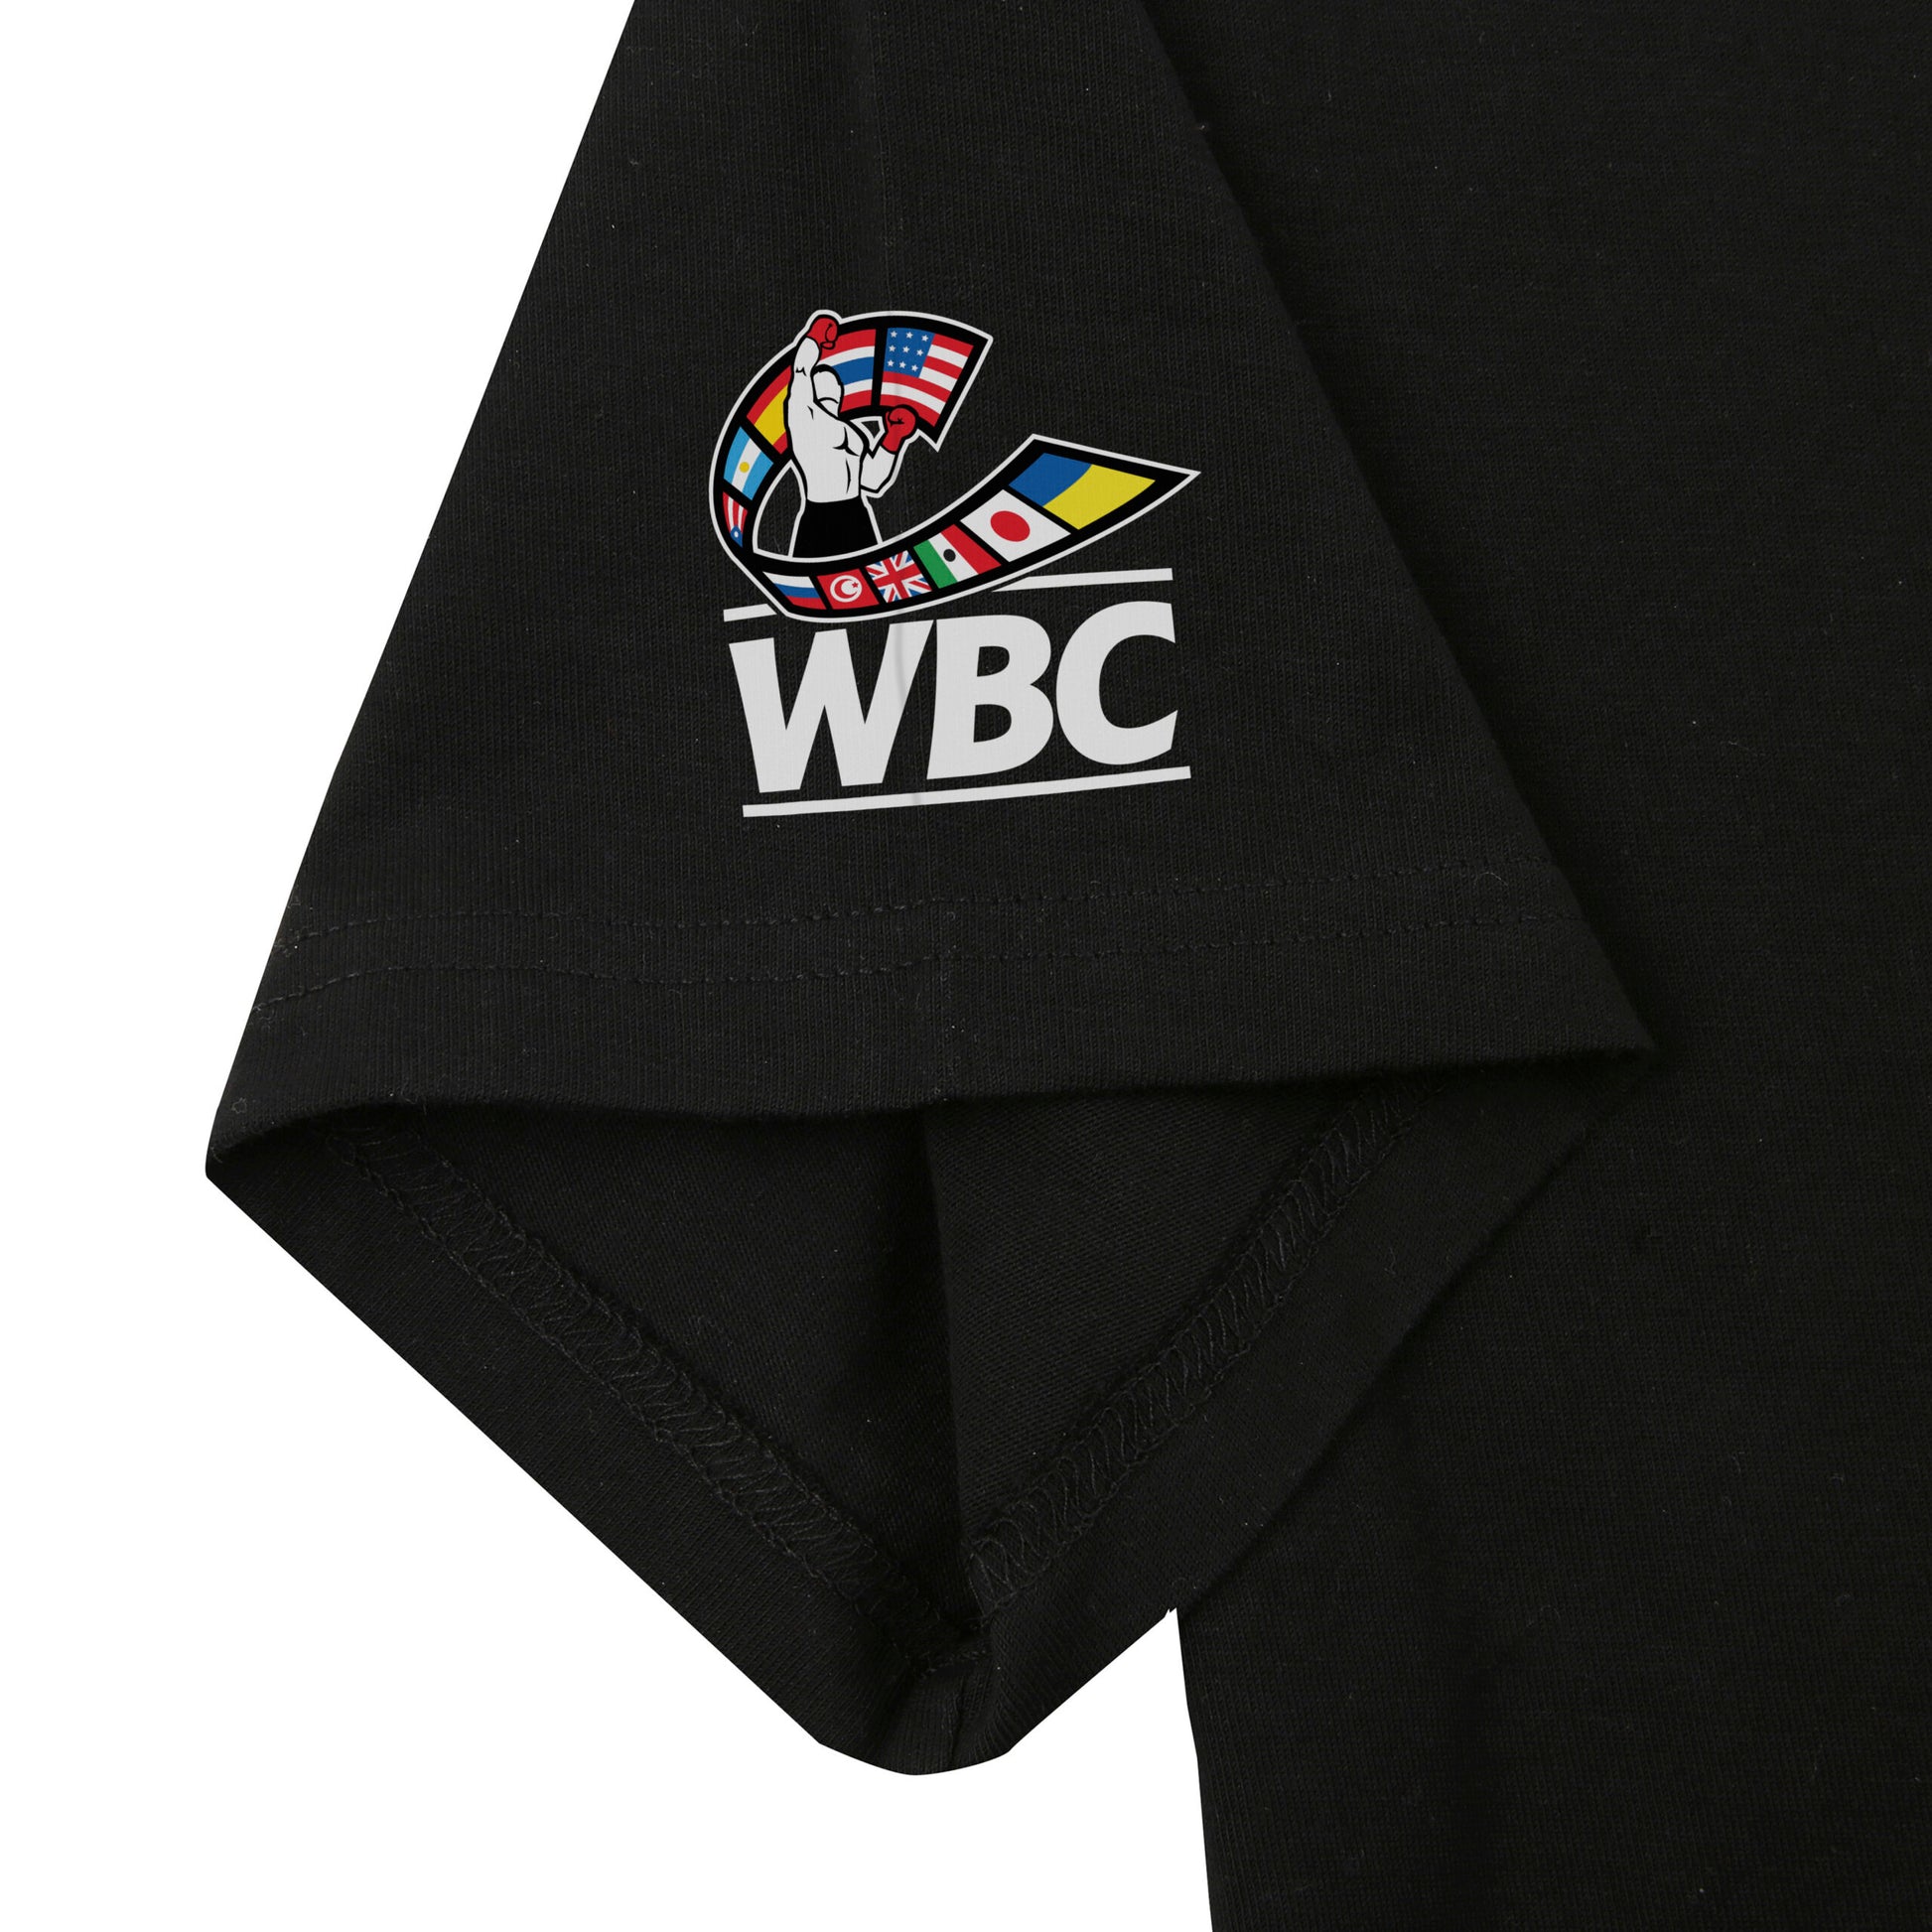 Adiwbct05 Adidas Wbc Boxing T Shirt Black 04